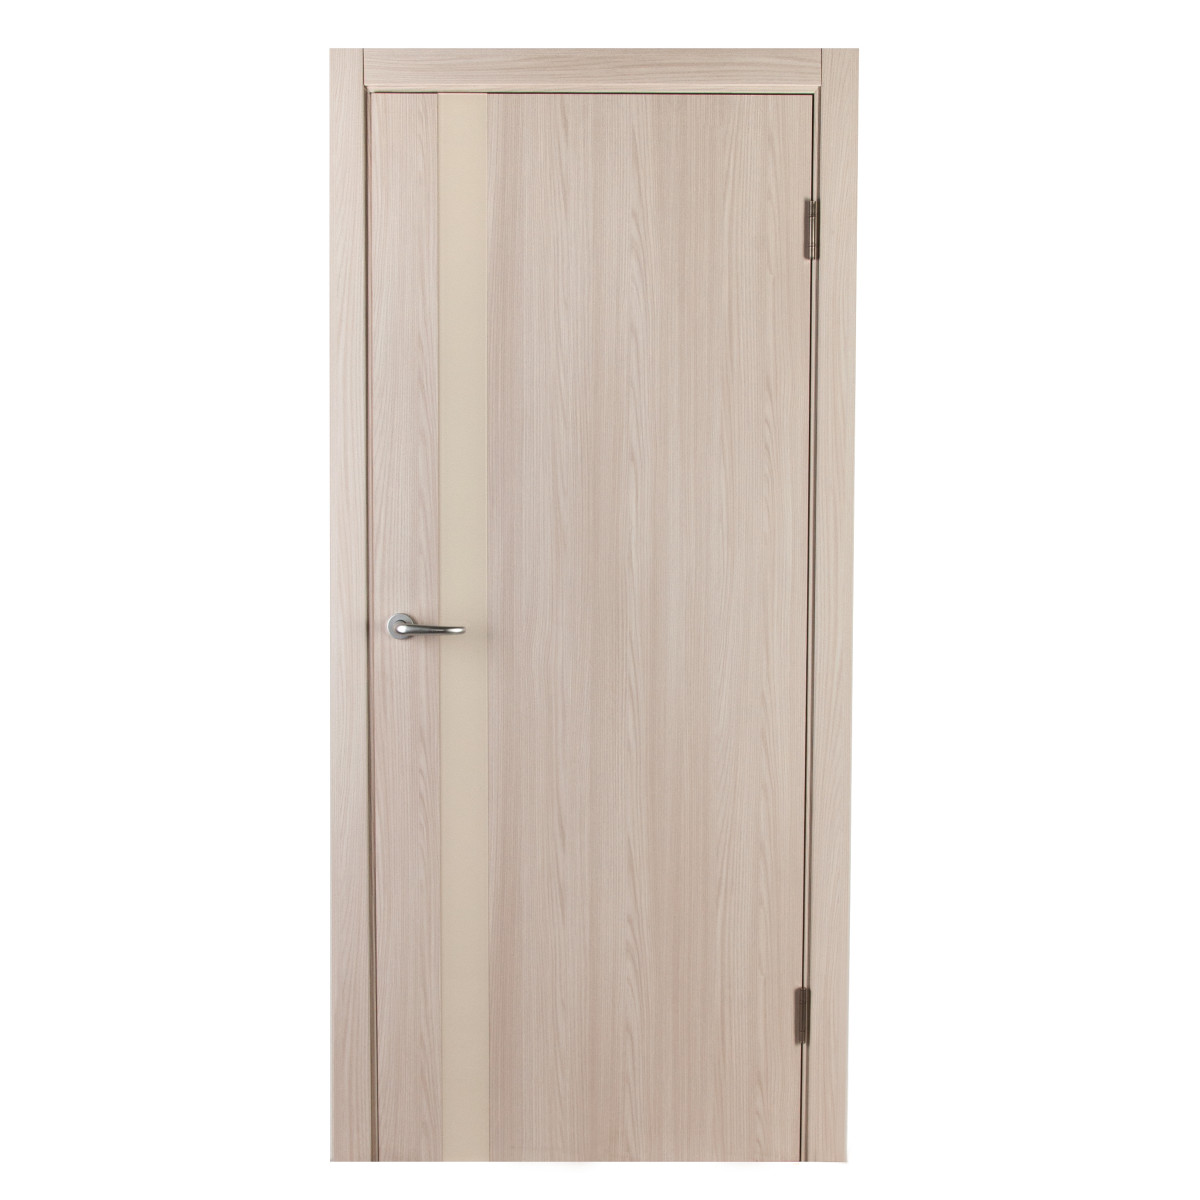 Дверь межкомнатная глухая с замком и петлями в комплекте Мирра 60x200 см, Hardflex, цвет ясень бора